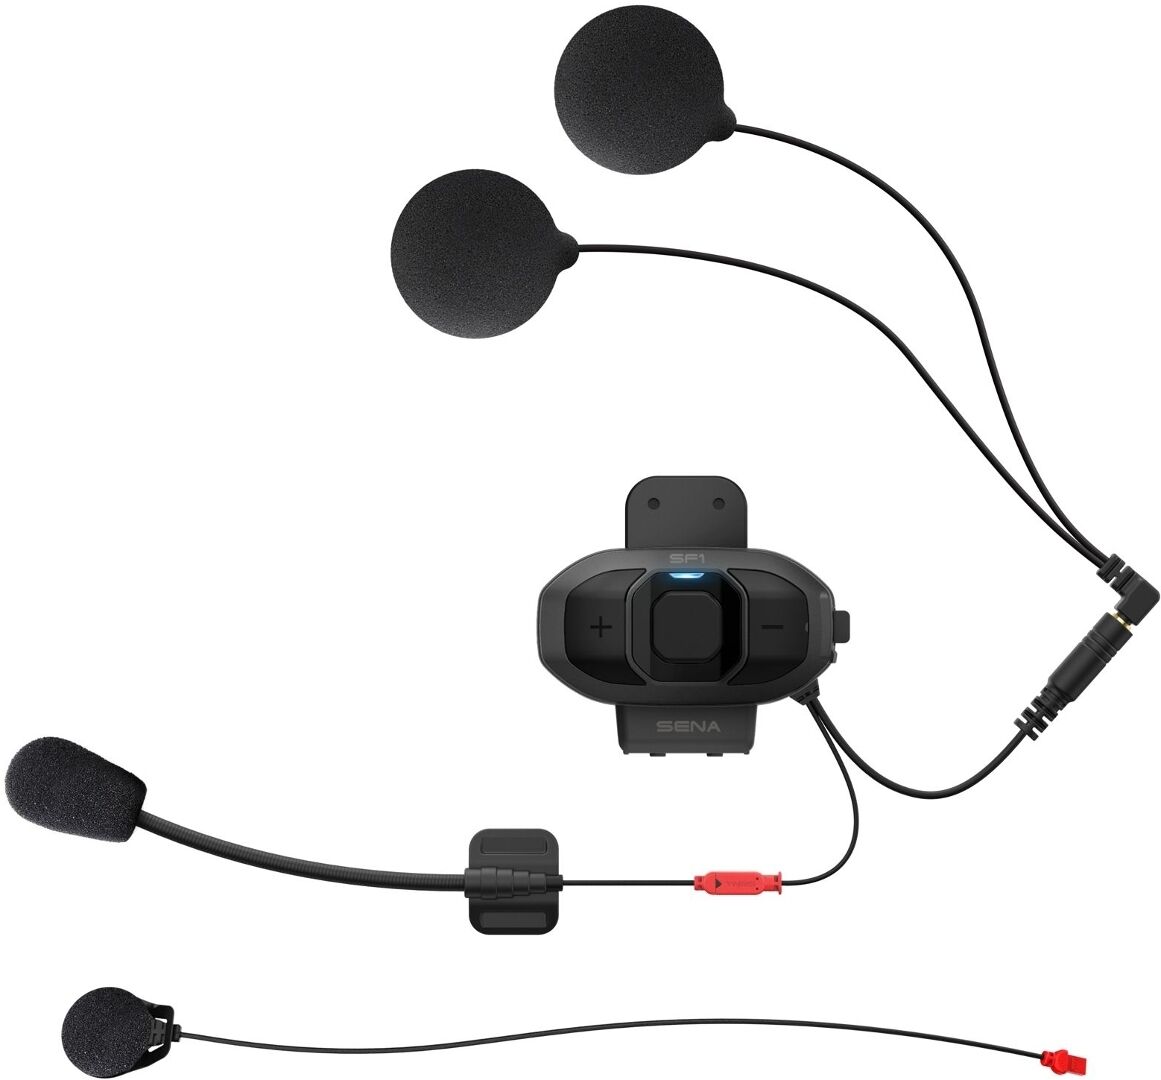 Sena SF1 Paquete individual del sistema de comunicación Bluetooth - Negro (un tamaño)